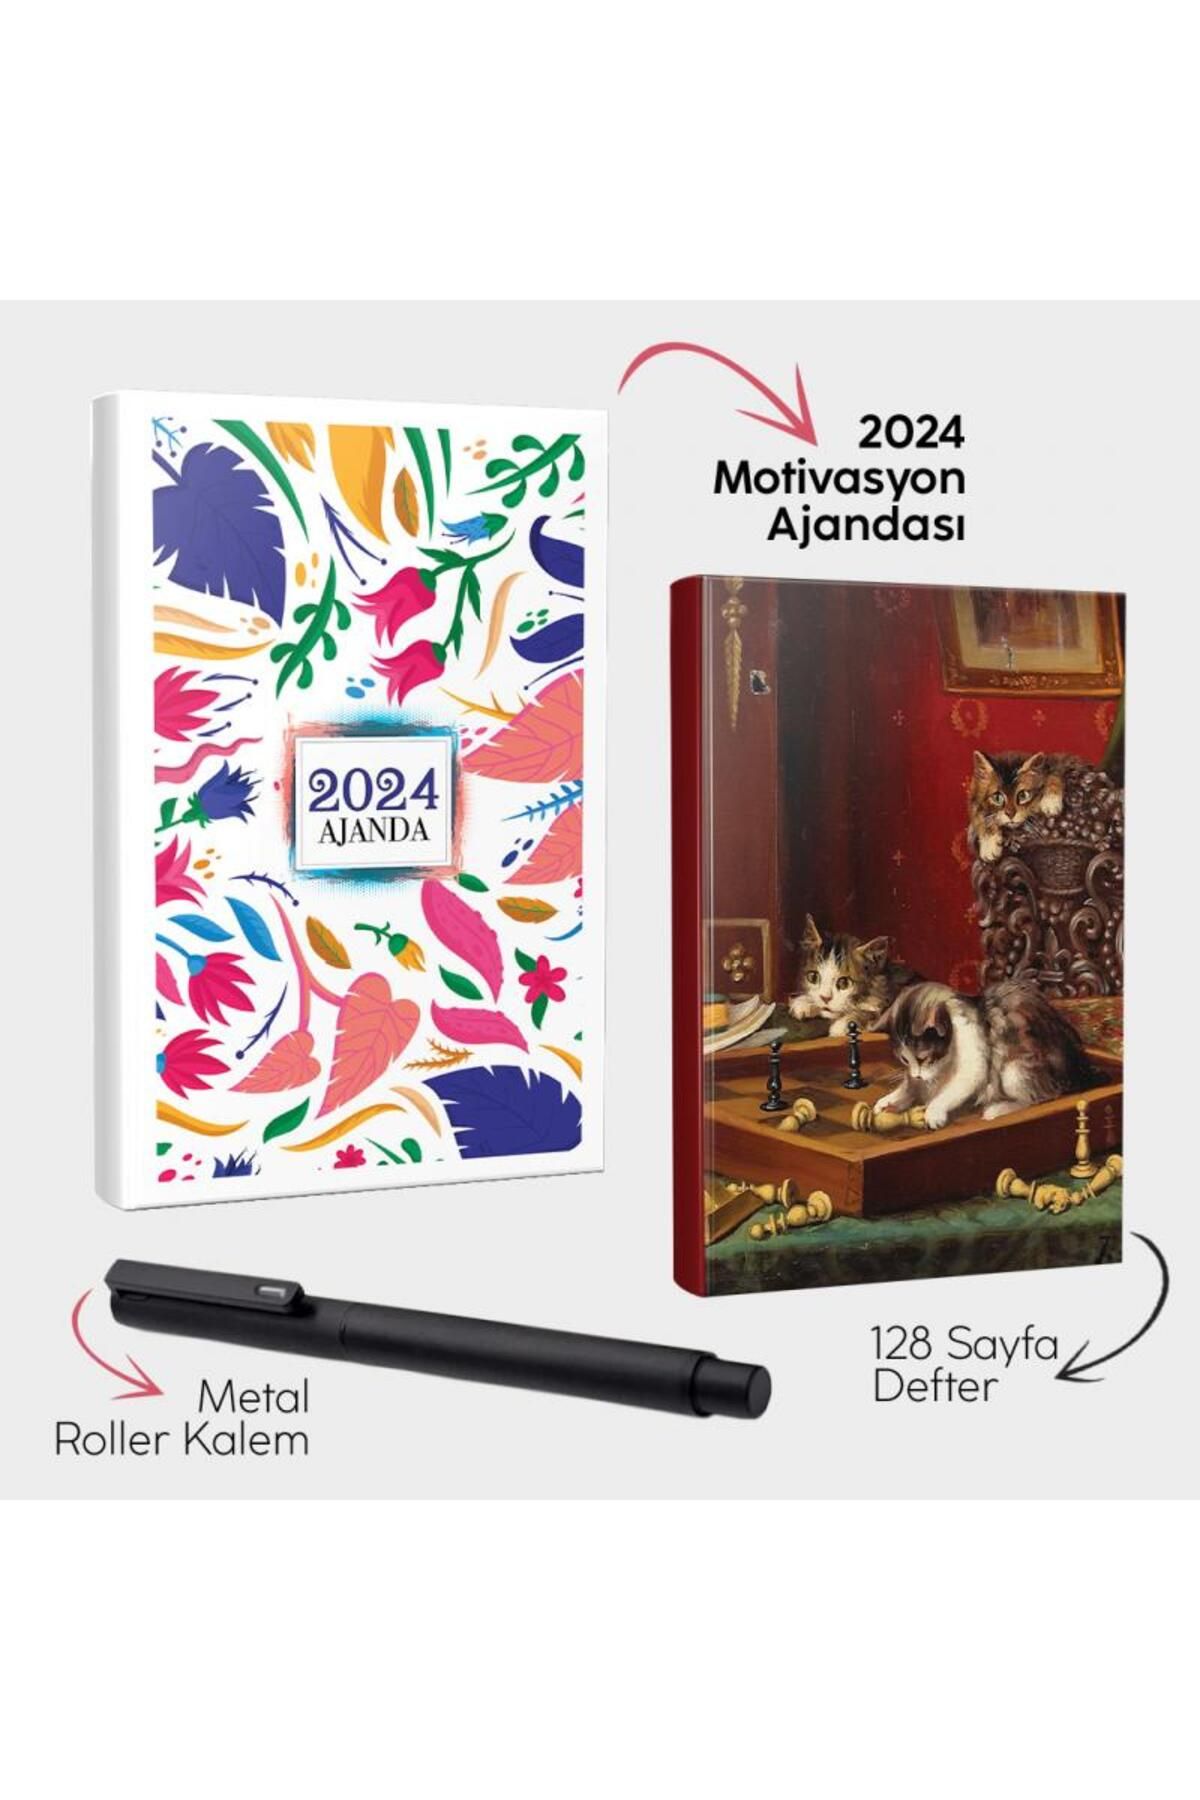 Halk Kitabevi Renkli Sonbahar 2024 Motivasyon Ajandası - Oyunbozan Kediler Defter ve Metal Roller Kalem